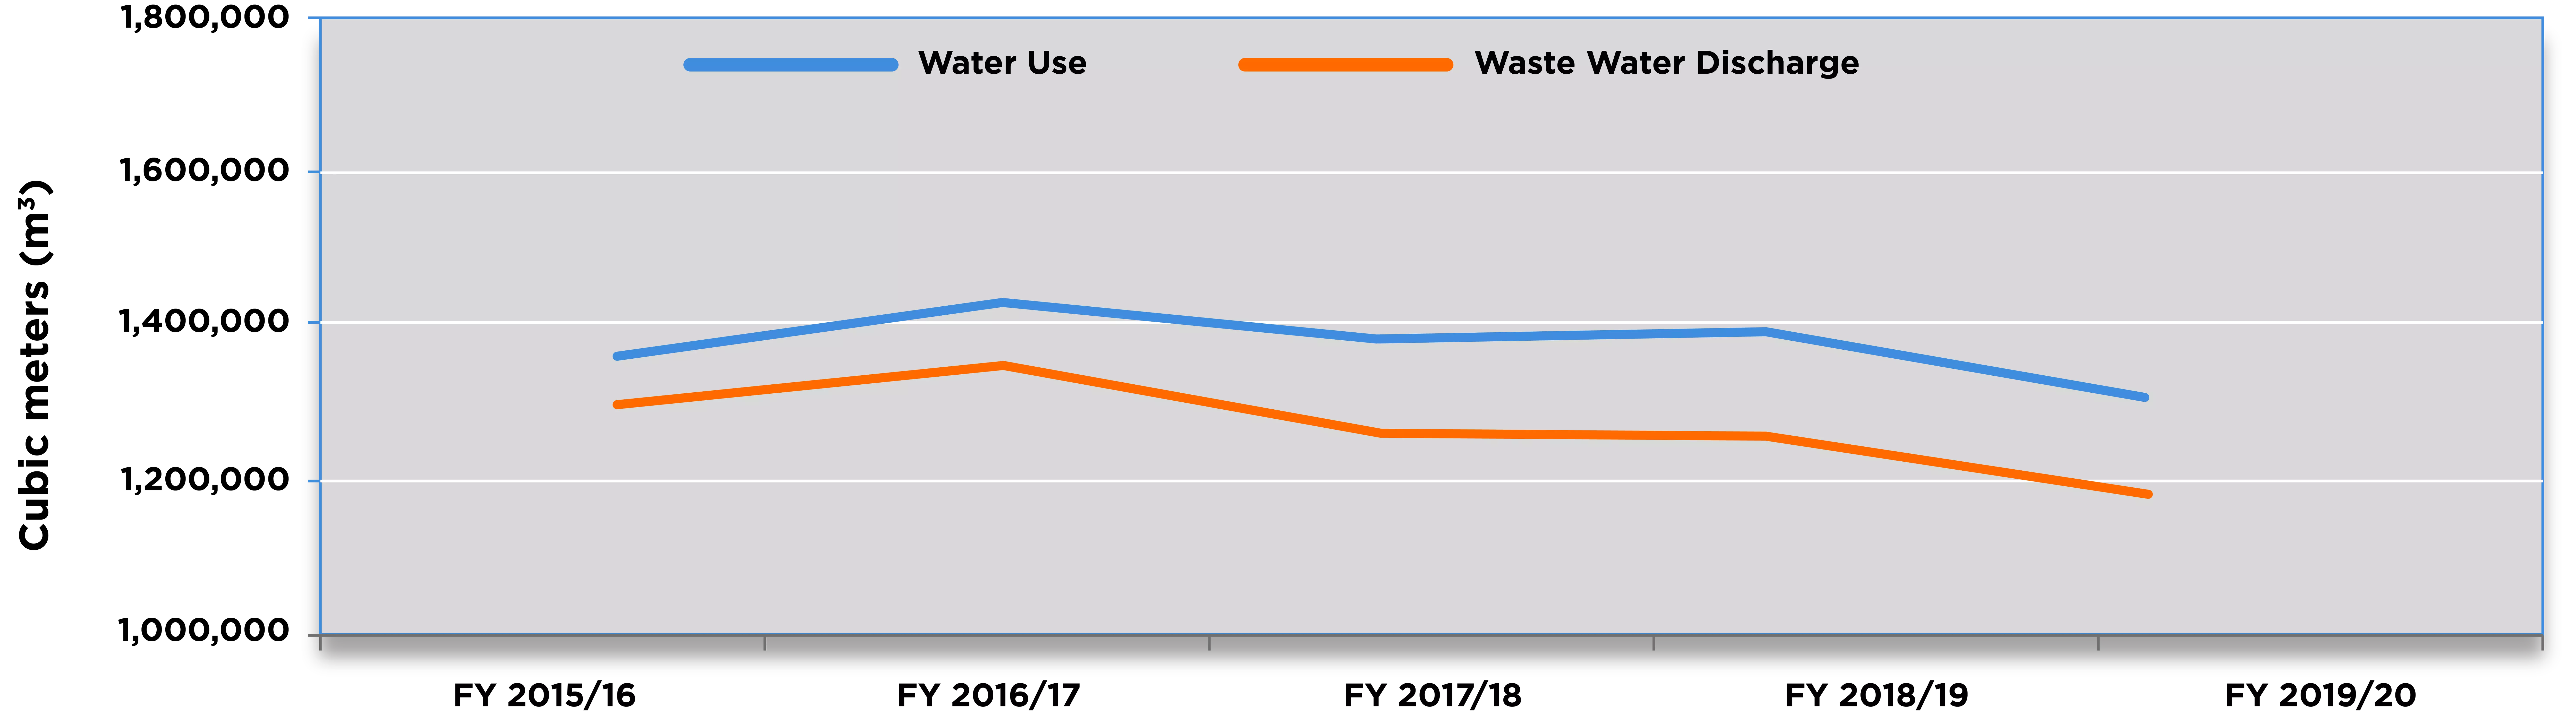 Graphique de l’utilisation de l’eau par rapport au débit d’eau résiduelle